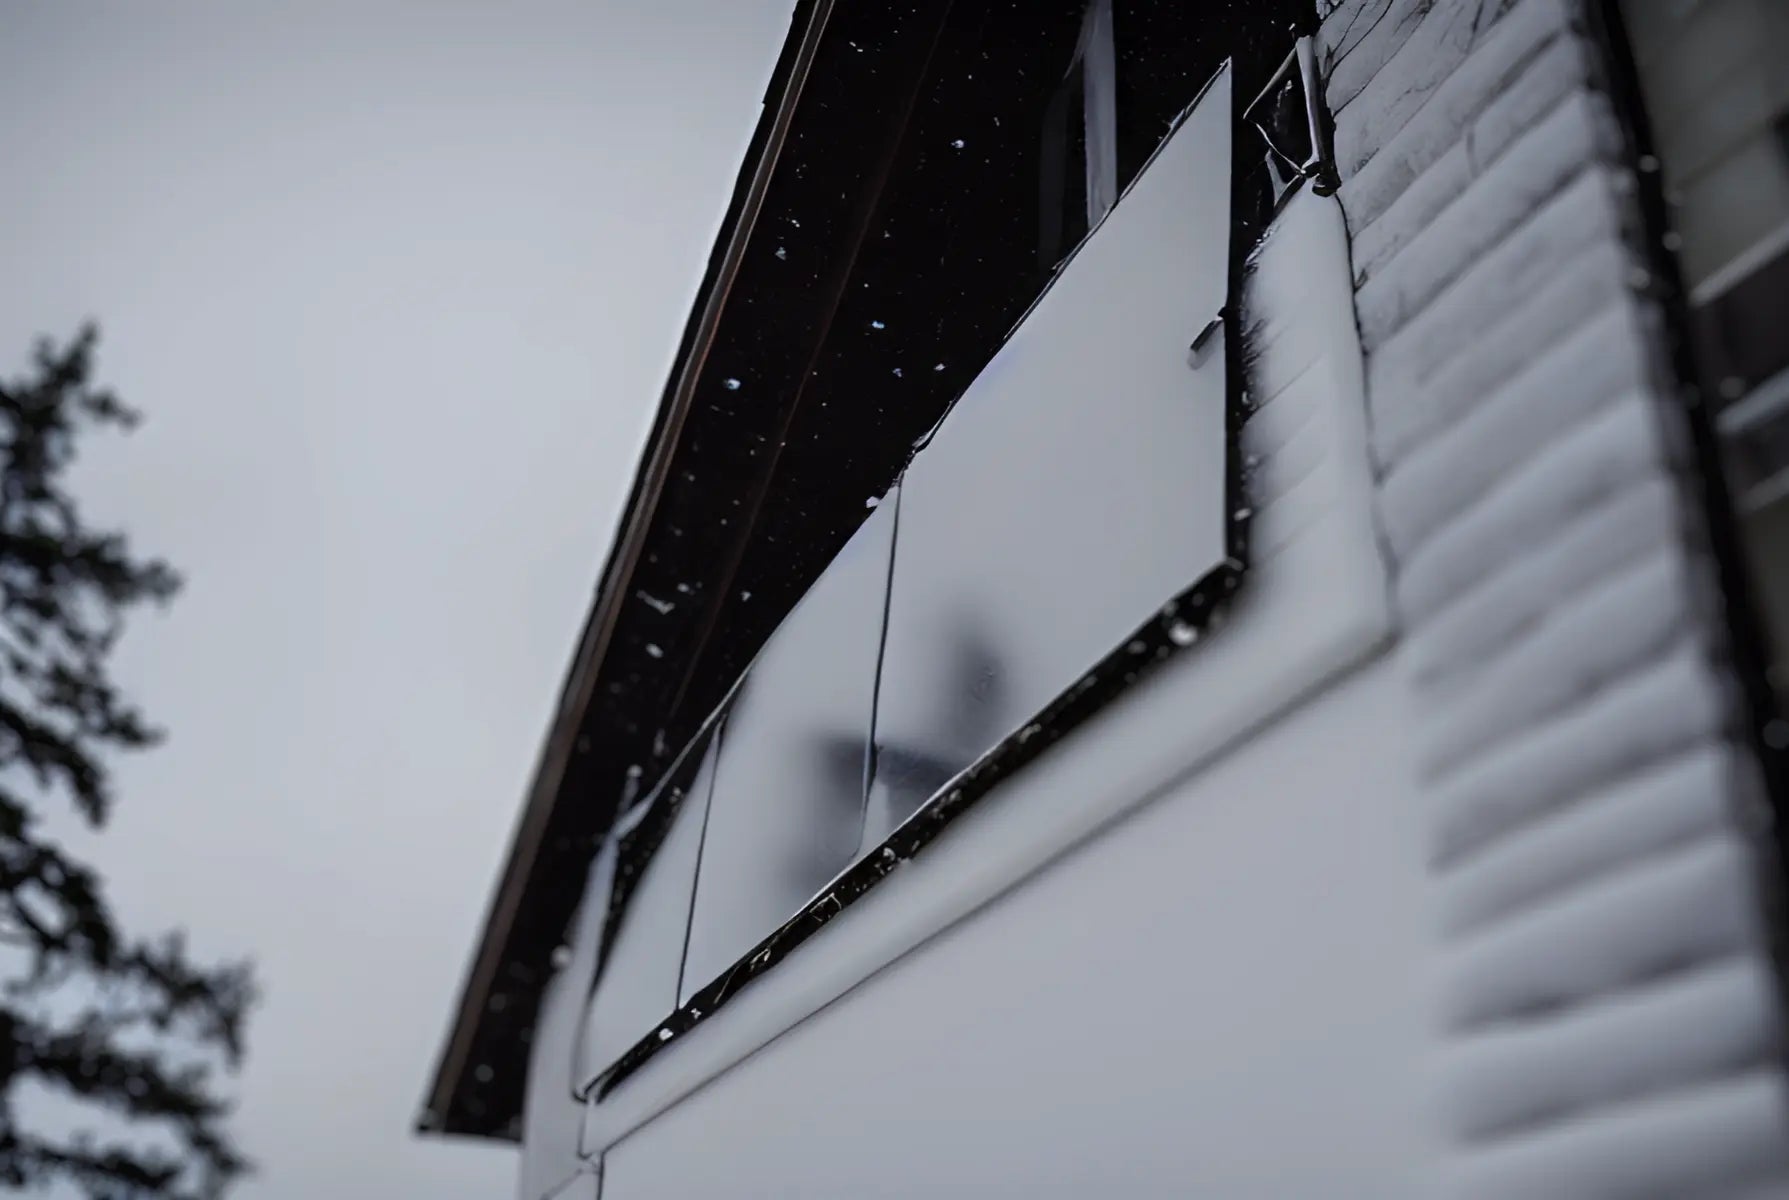 Balkonkraftwerk an einem Balkon mit Schnee